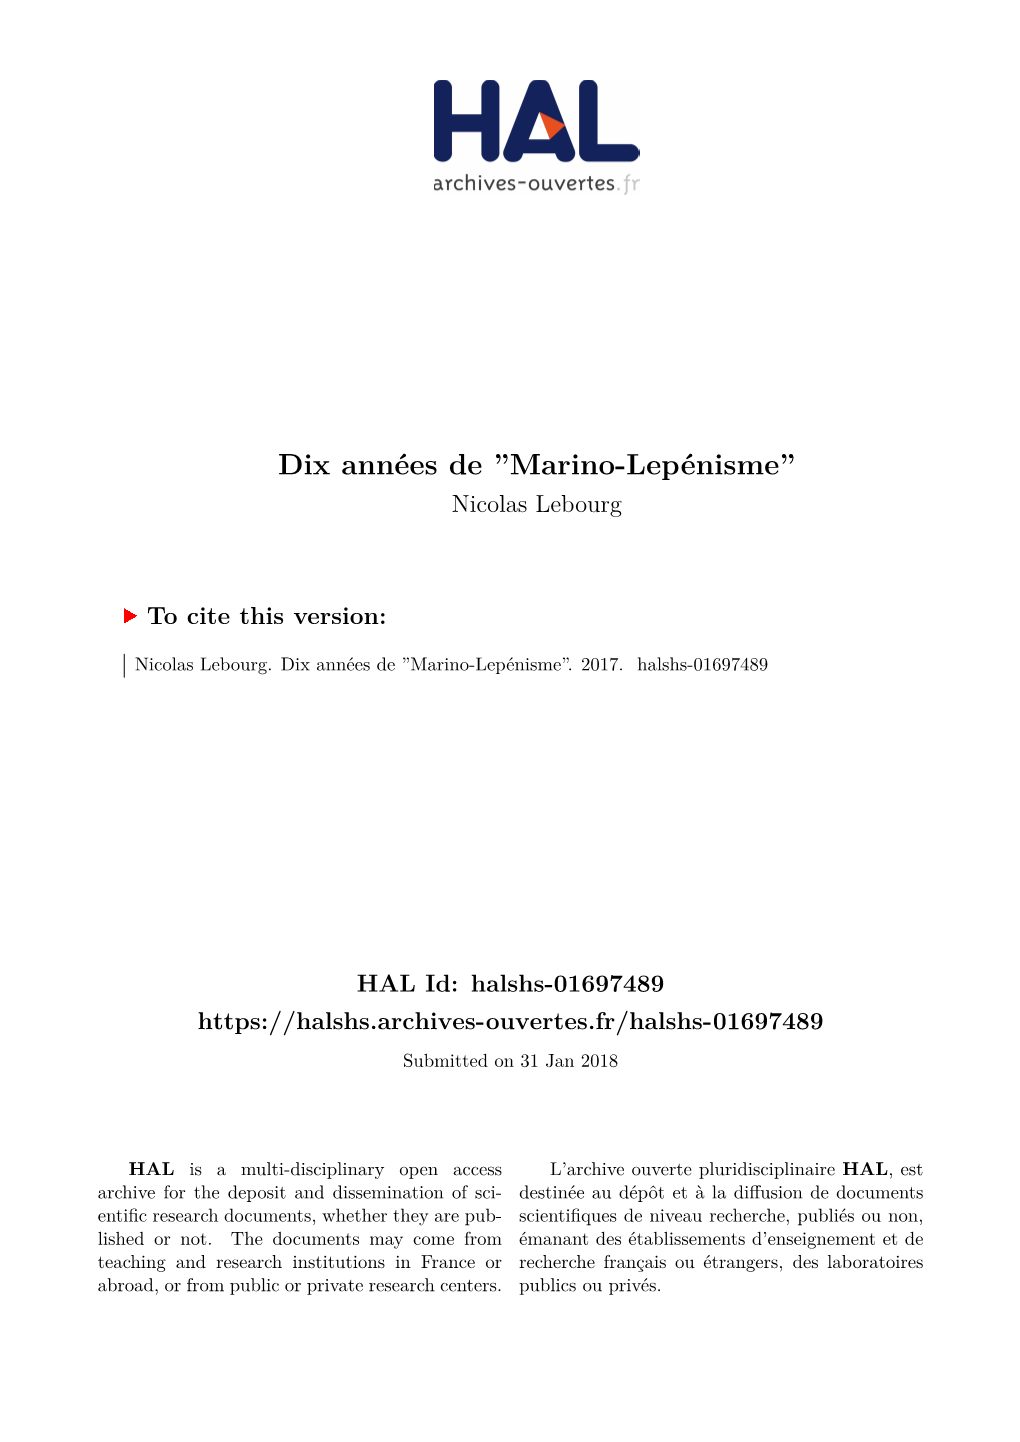 Marino-Lepénisme” Nicolas Lebourg